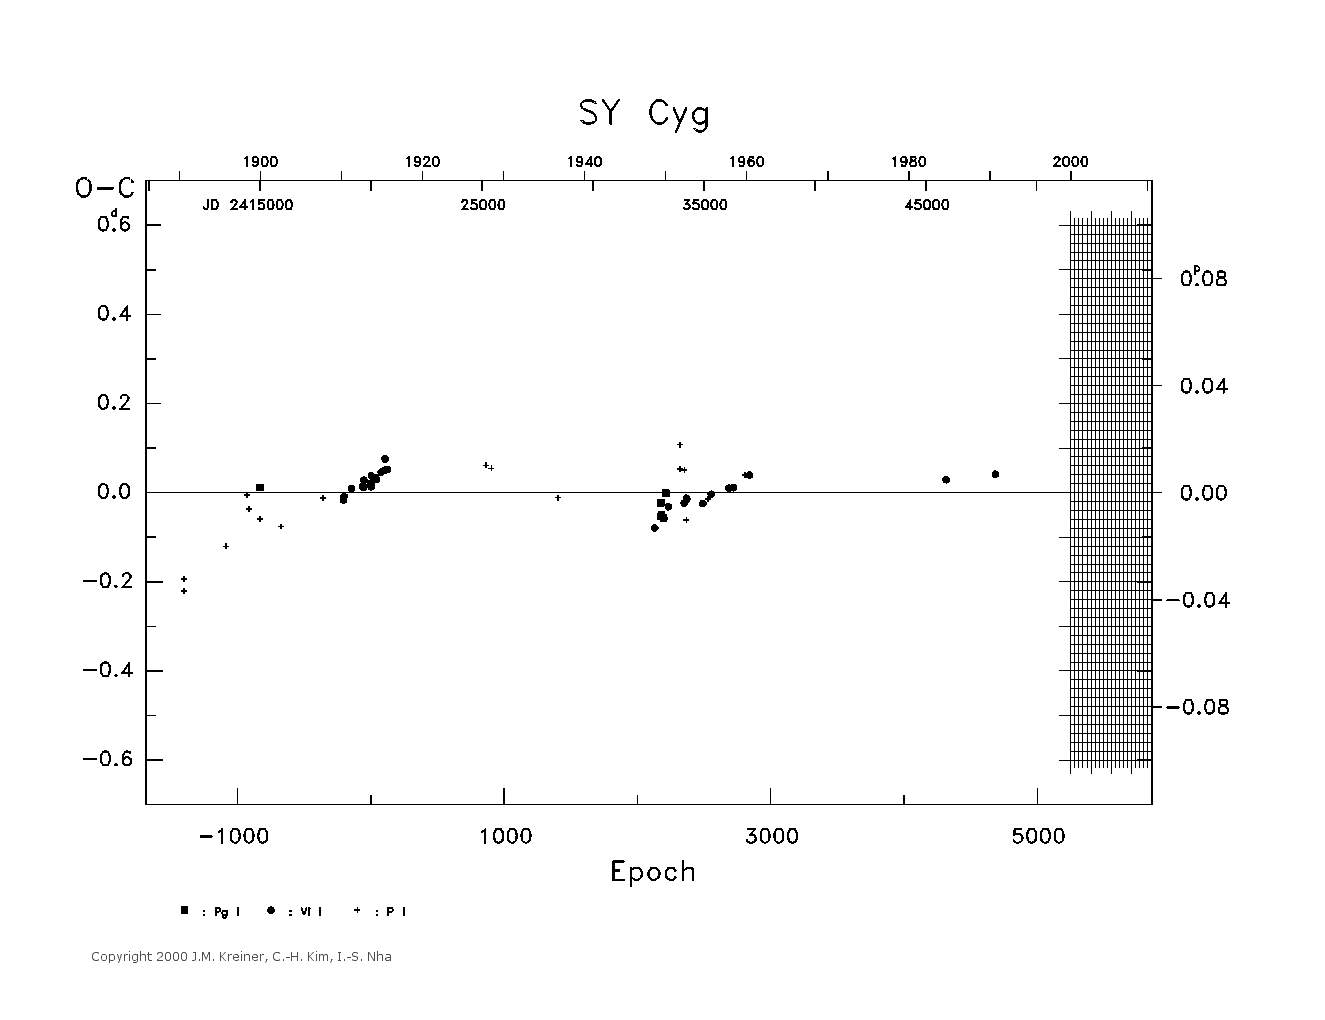 [IMAGE: large SY CYG O-C diagram]